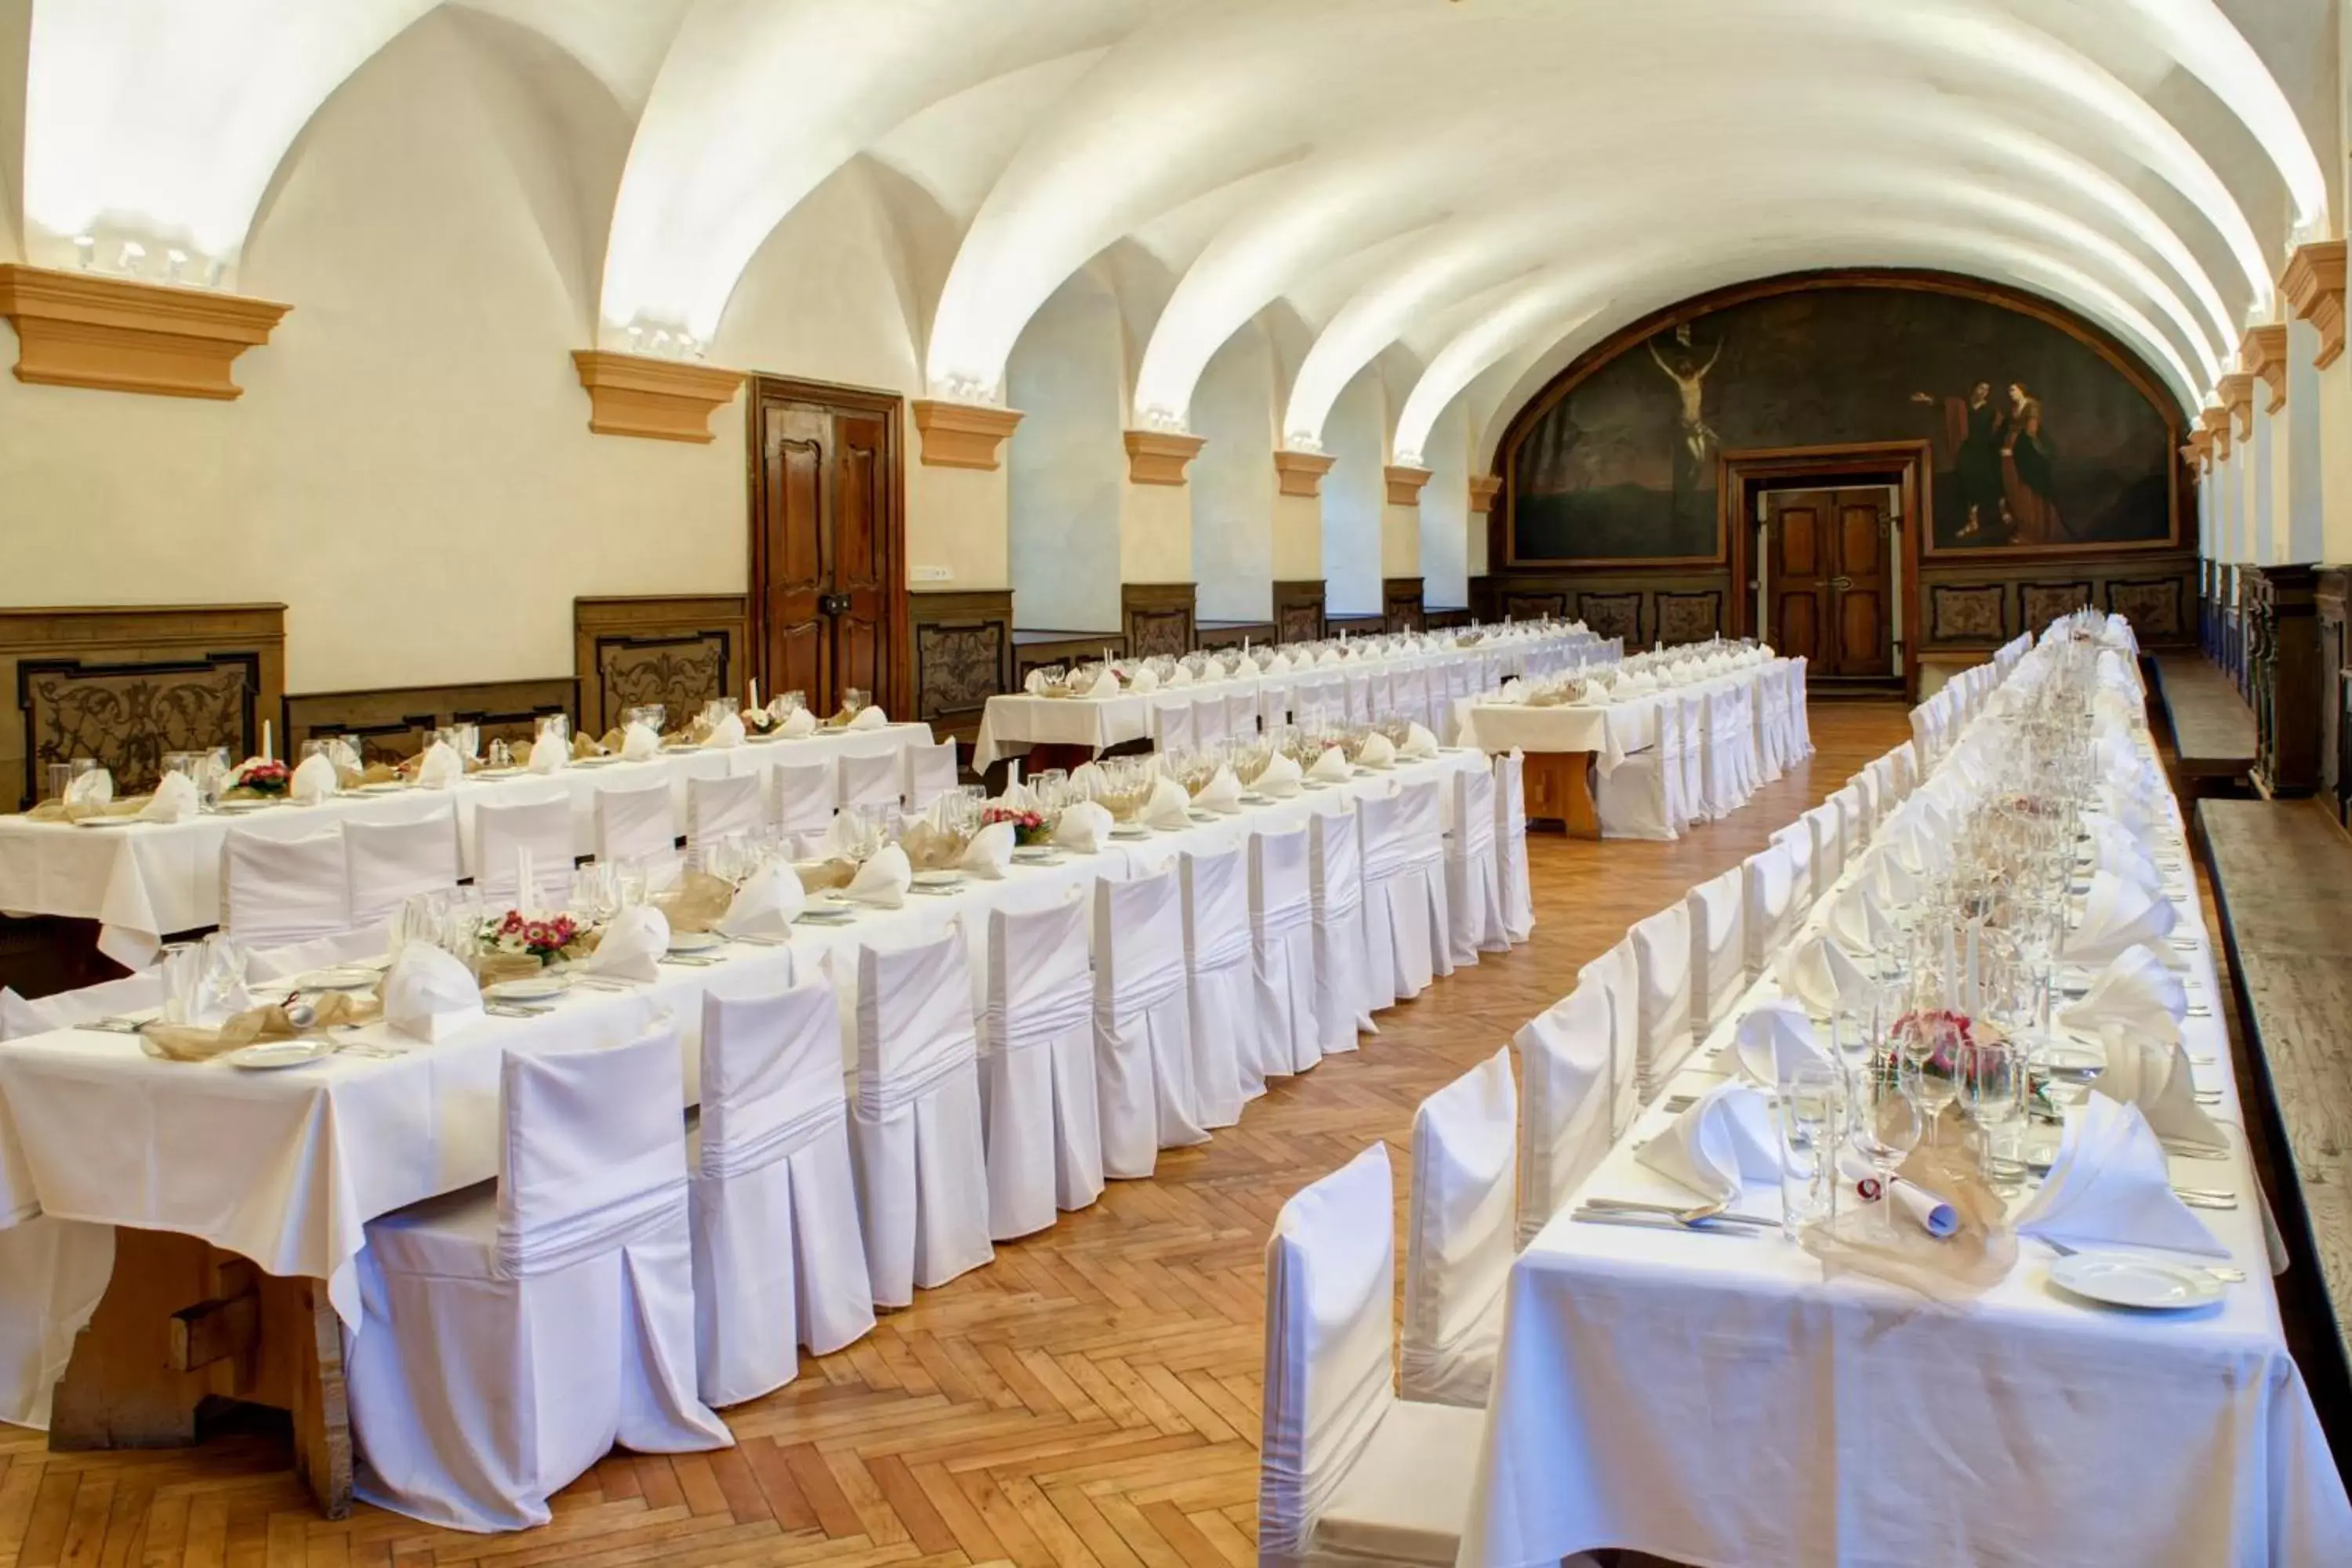 Banquet/Function facilities, Banquet Facilities in Adria Hotel Prague